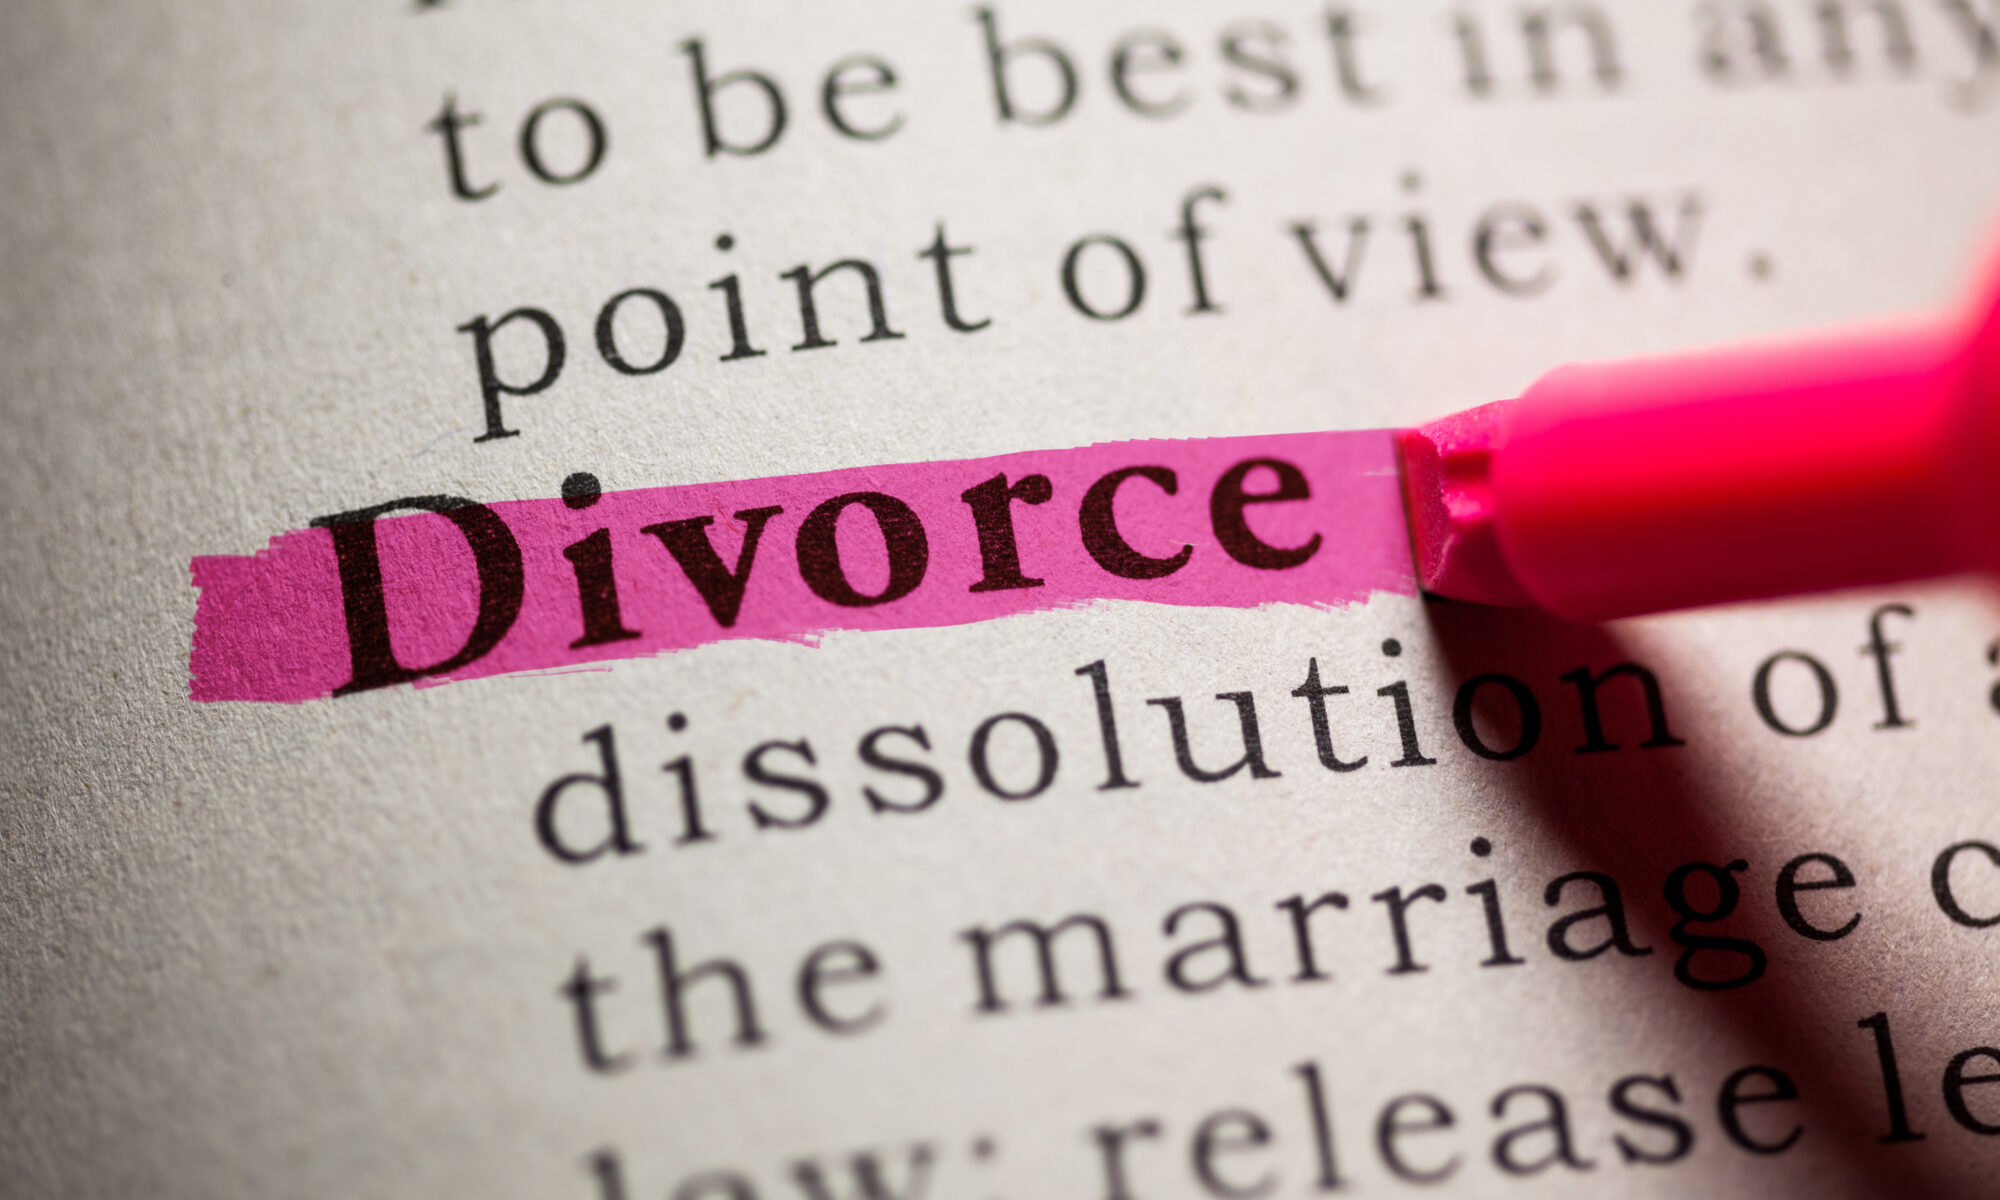 Le divorce est la dissolution légale d'un mariage